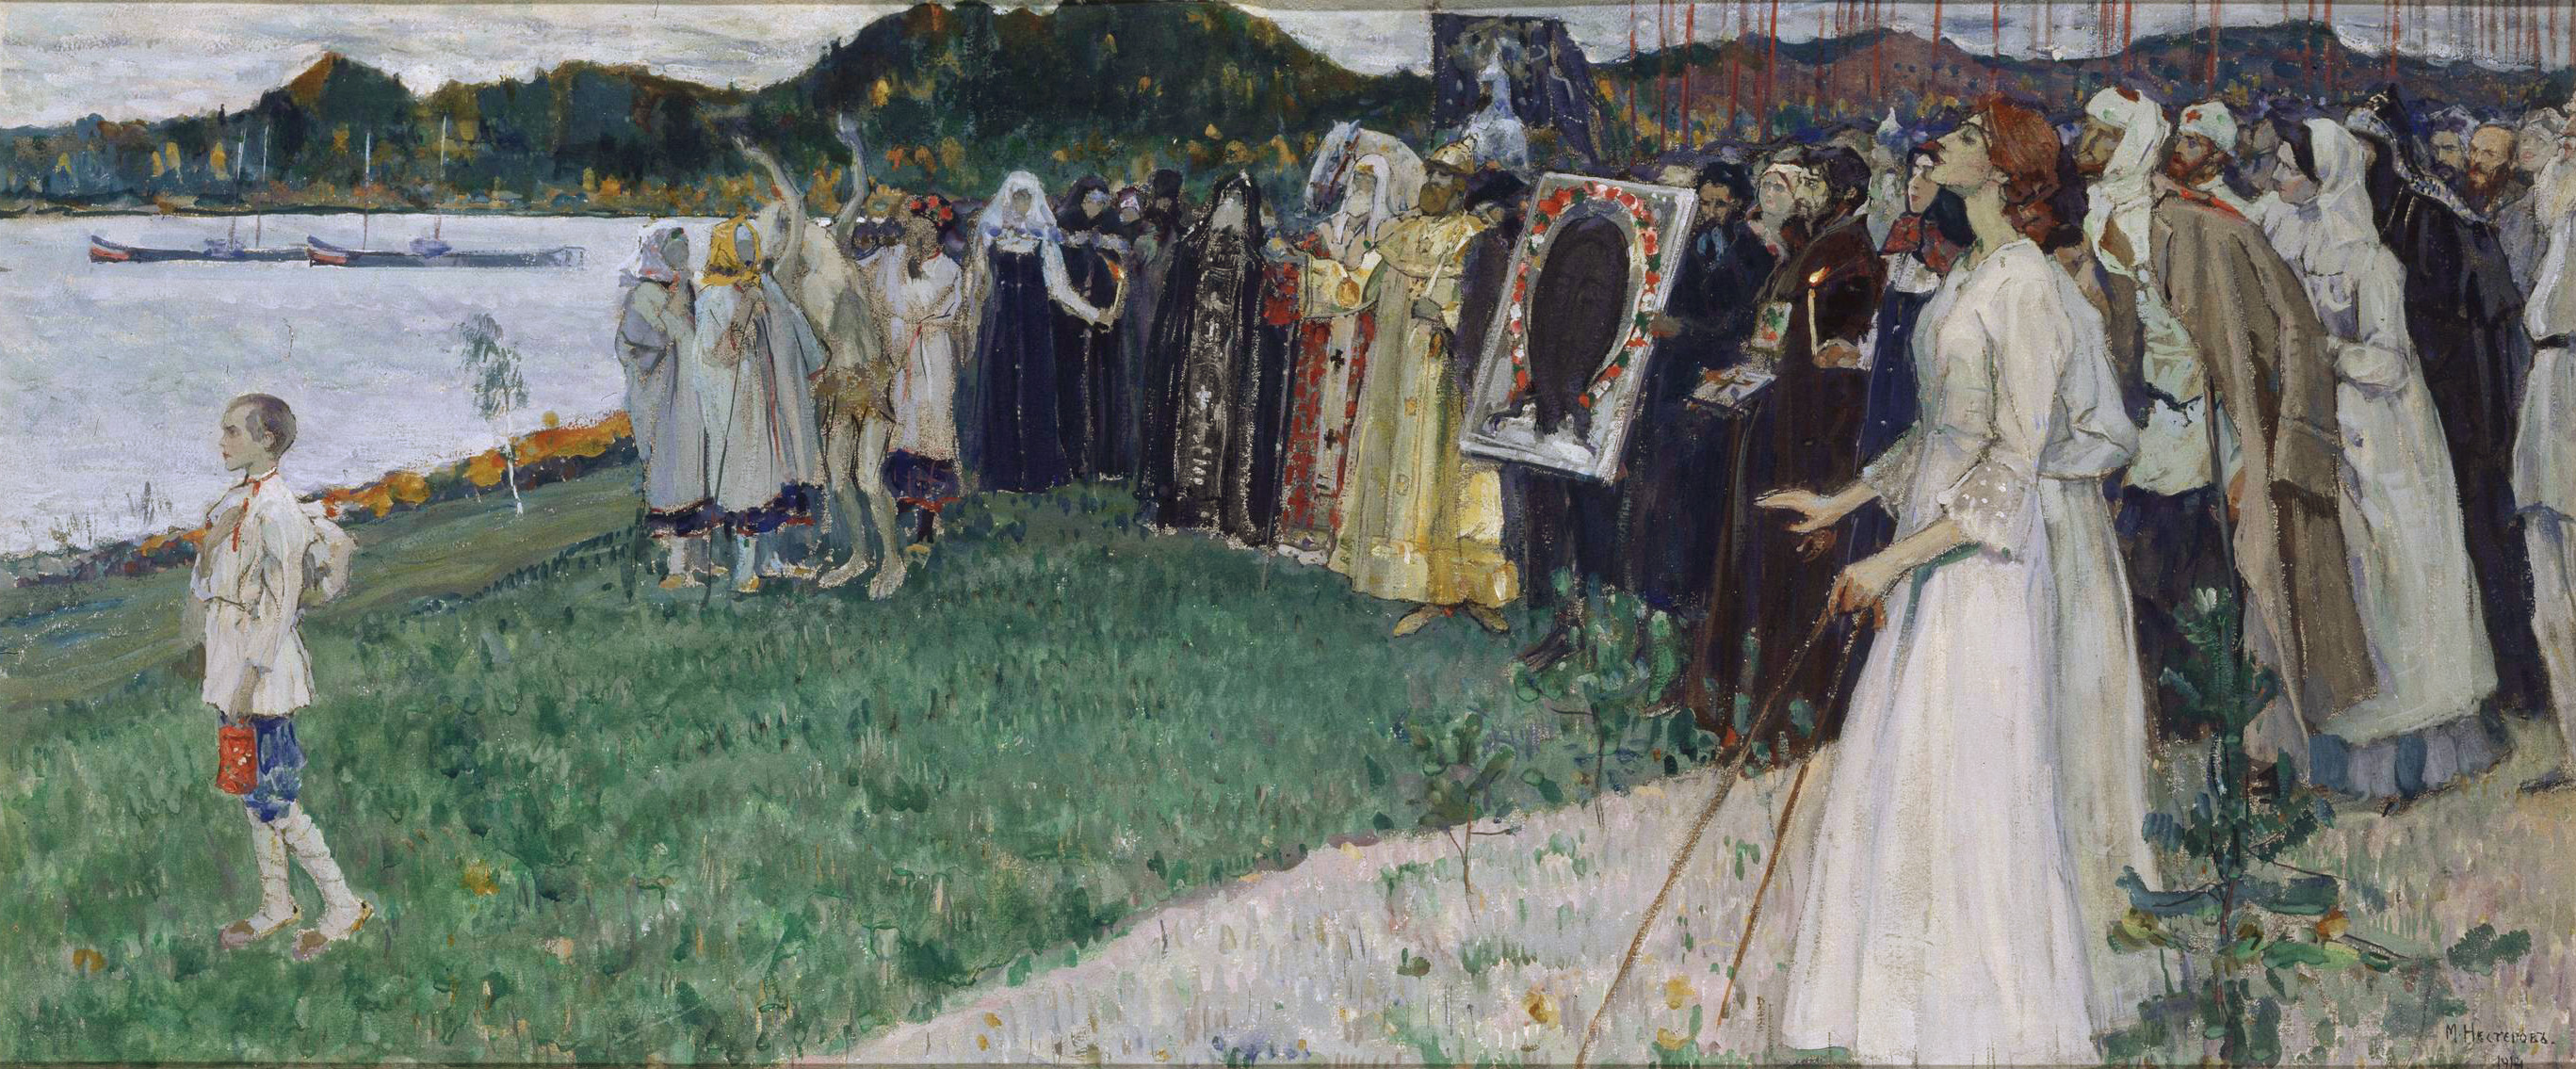 Нестеров М.. На Руси. 1914